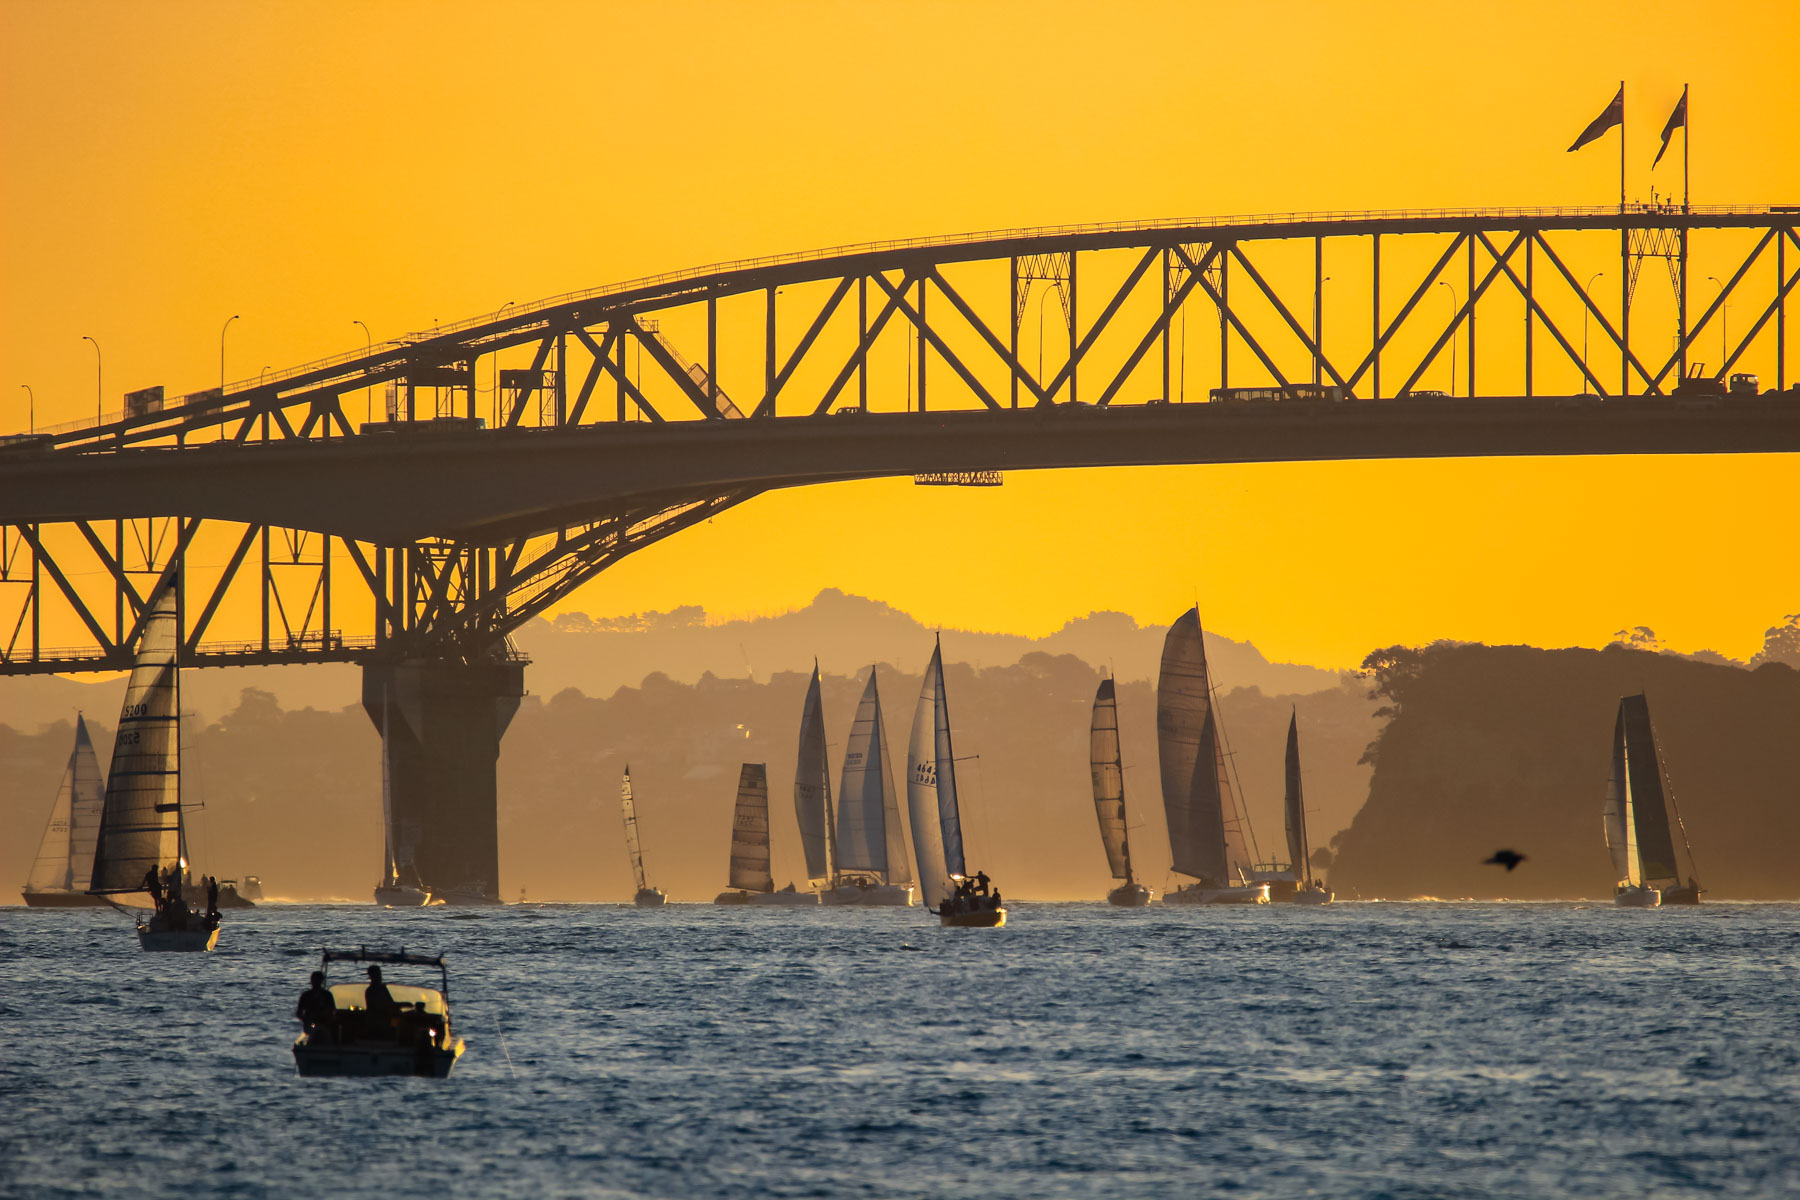 Les silhouettes d’une douzaine de voiliers apparaissent sous un pont au coucher du soleil.